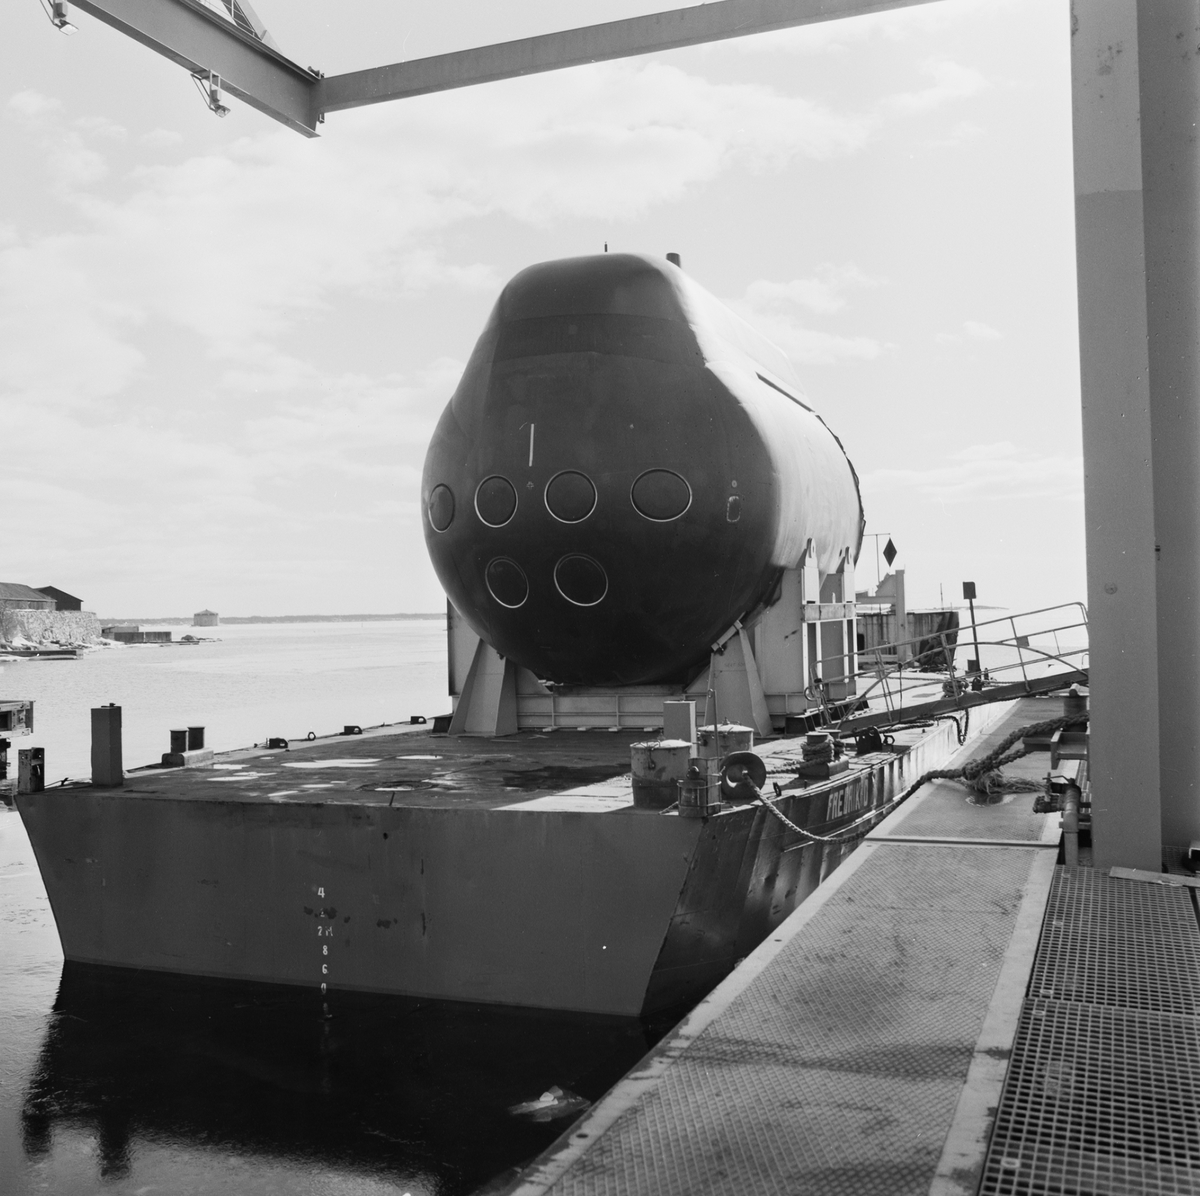 Förstäv till A19 Ubåten på pråm.
Typ: Ubåt
Klass: Gotland